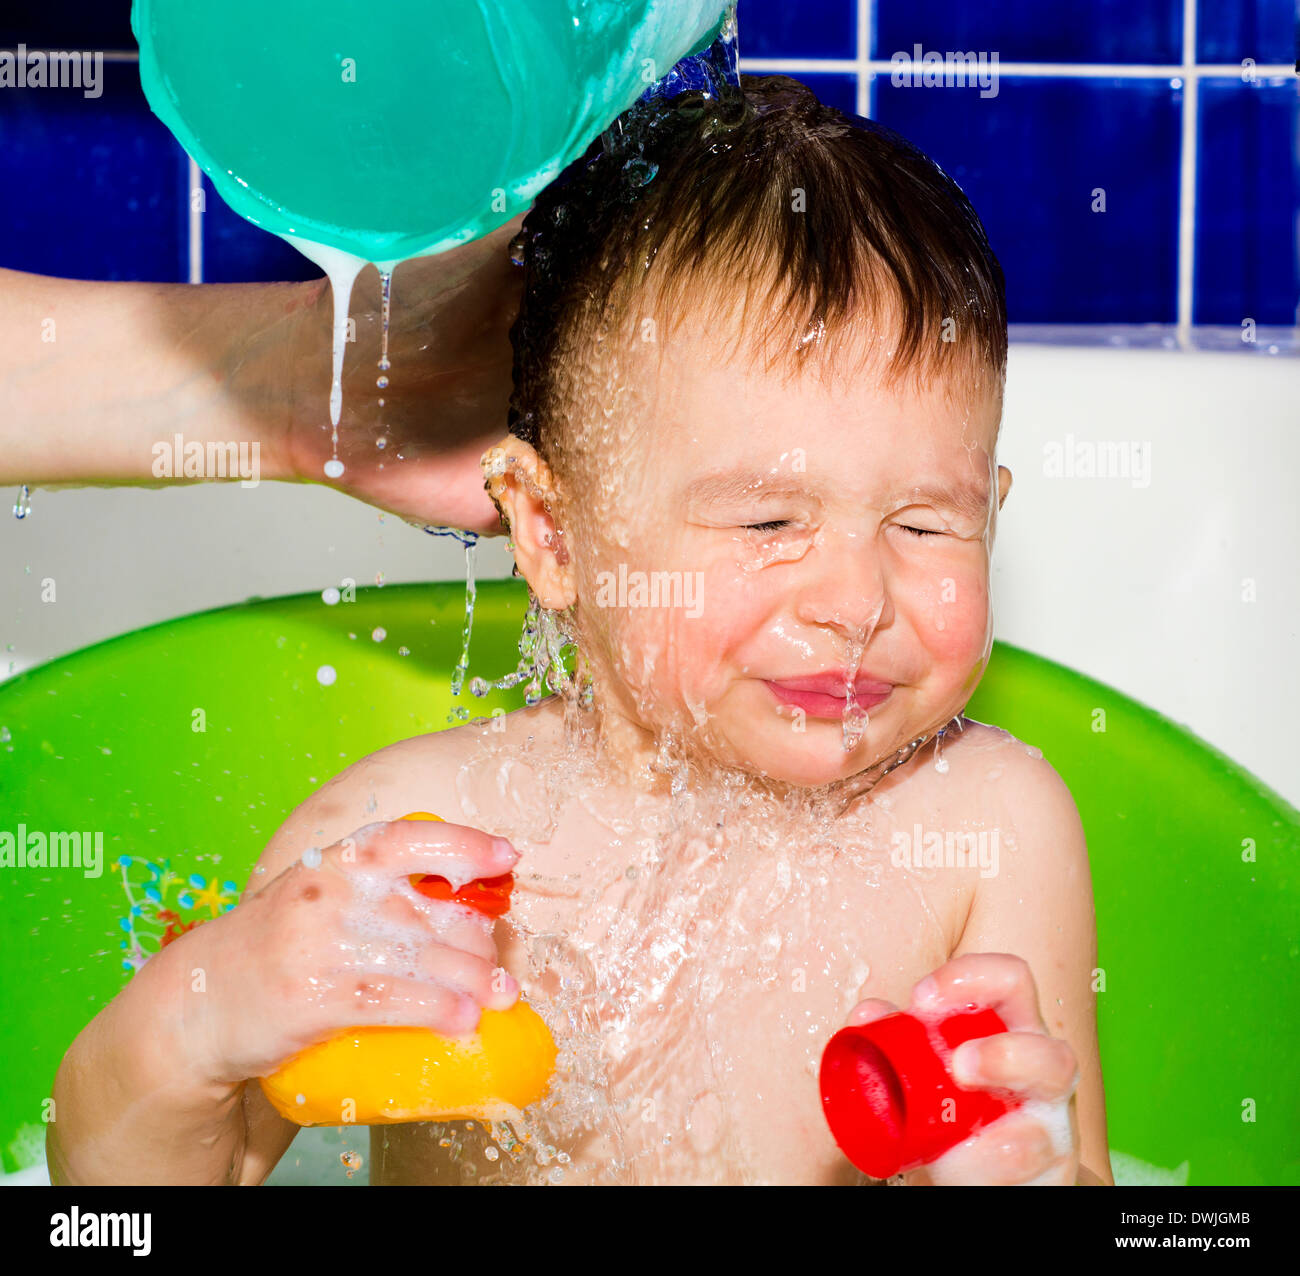 Детей моют в ванной. Мытье ребенка. Для мытья ребенка в ванной. Ребенок купается в ванне весело. Ребенок с намыленной головой.